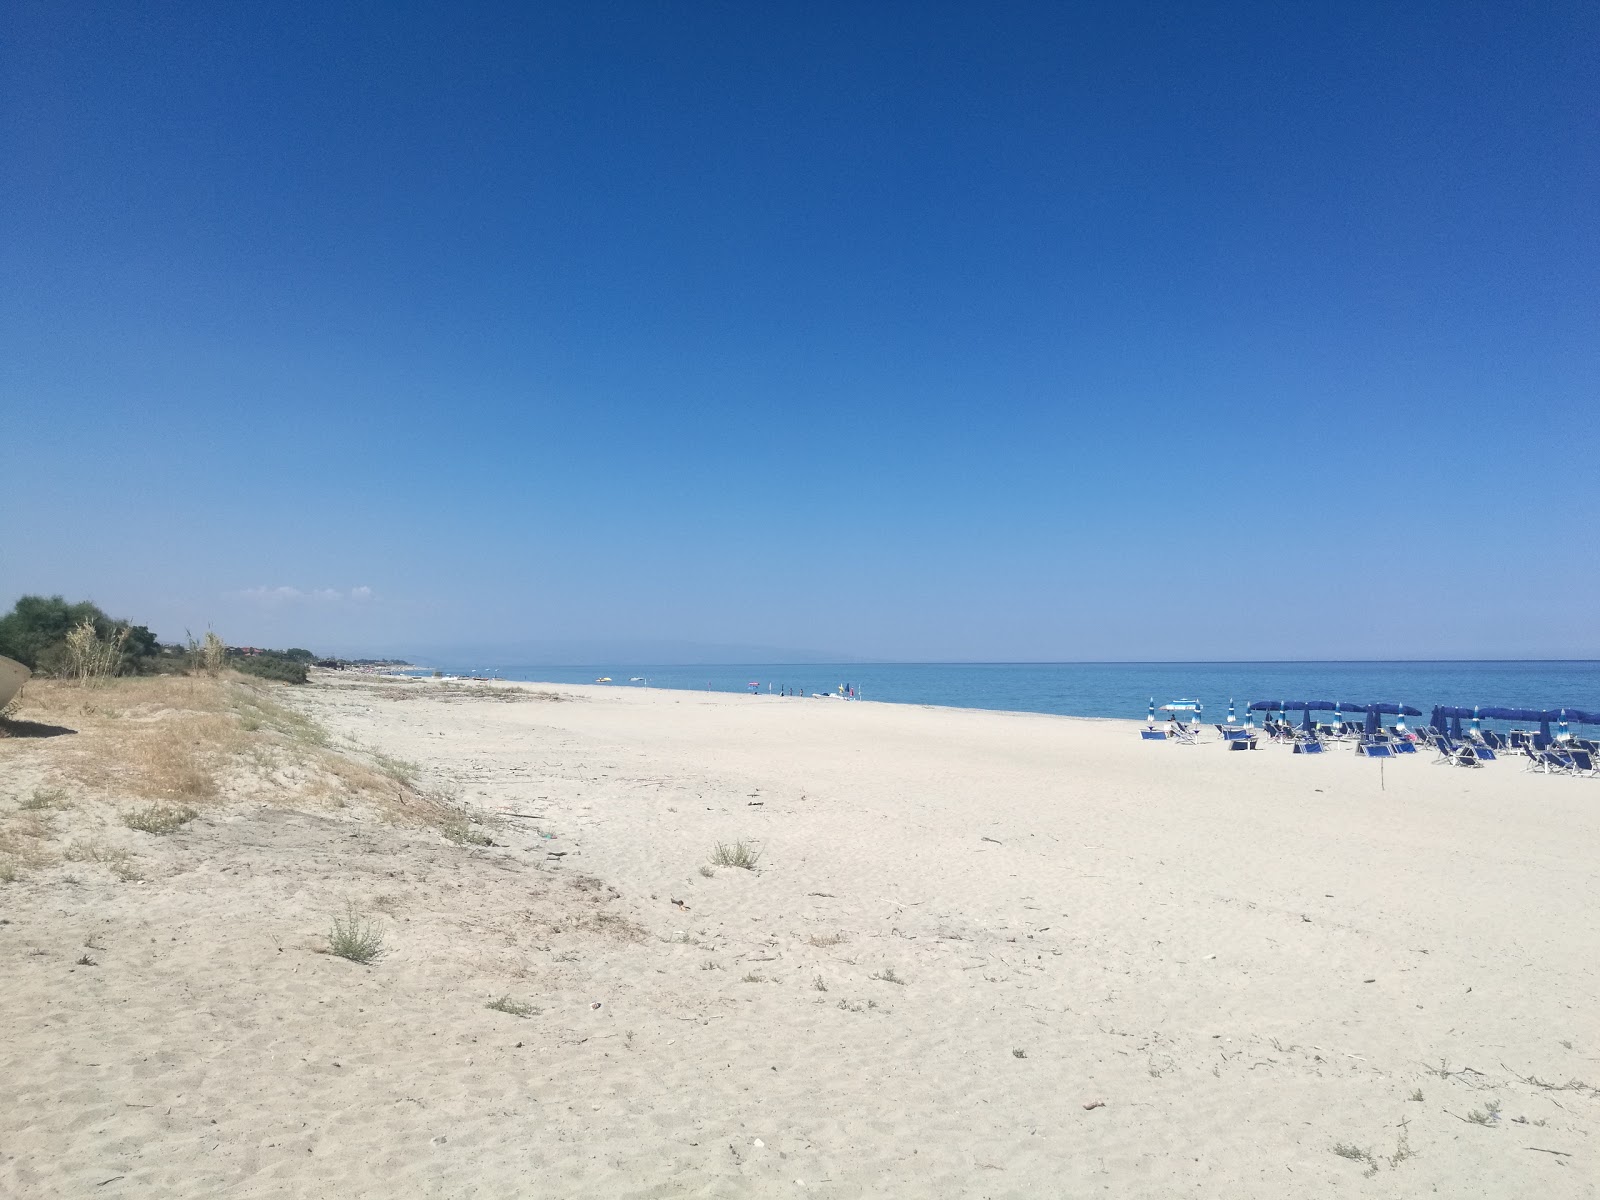 Fotografie cu Campomarzio beach - locul popular printre cunoscătorii de relaxare